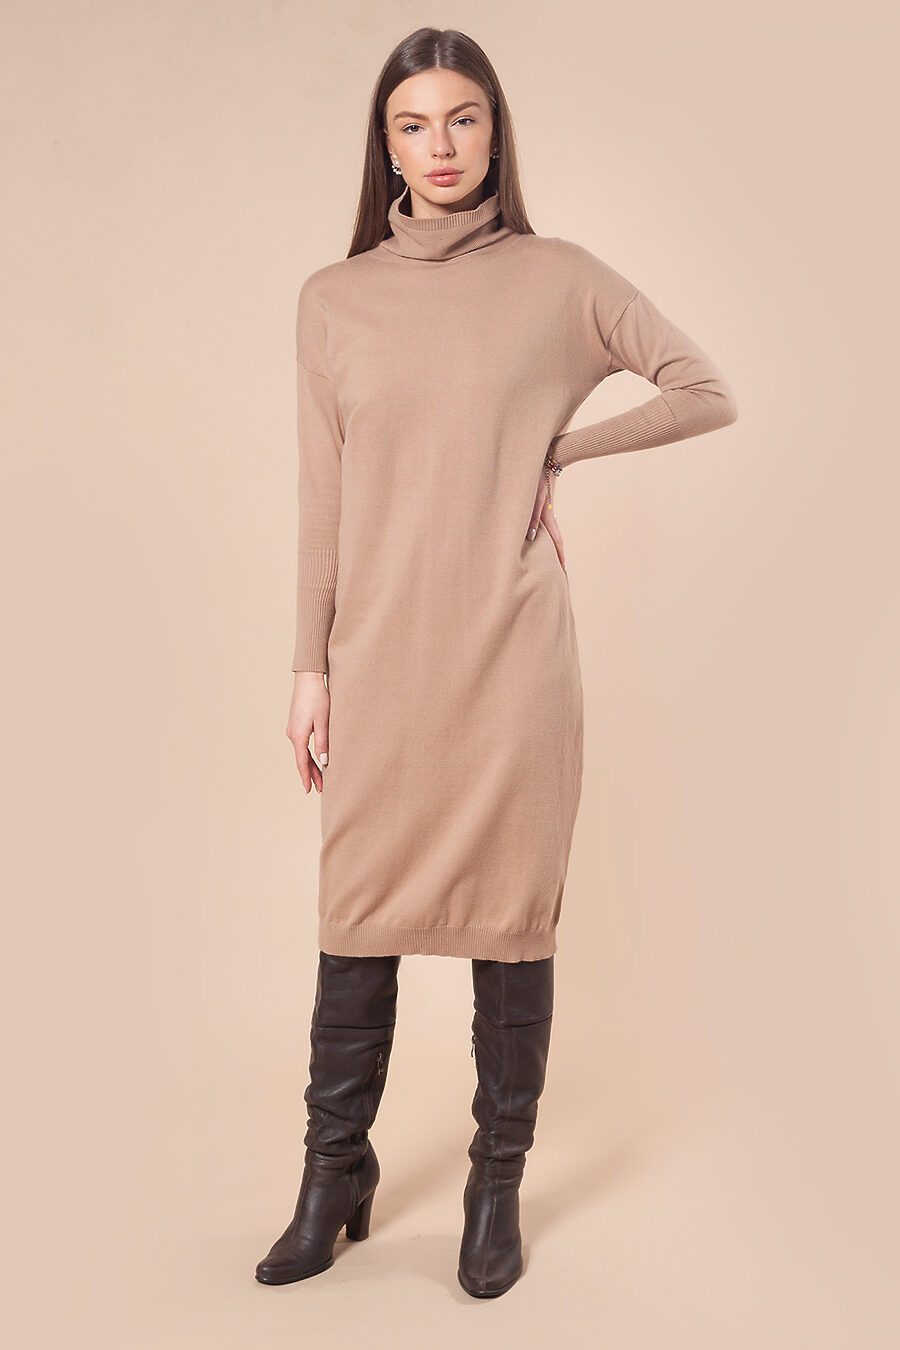 Платье для женщин VILATTE 795736 купить оптом от производителя. Совместная покупка женской одежды в OptMoyo